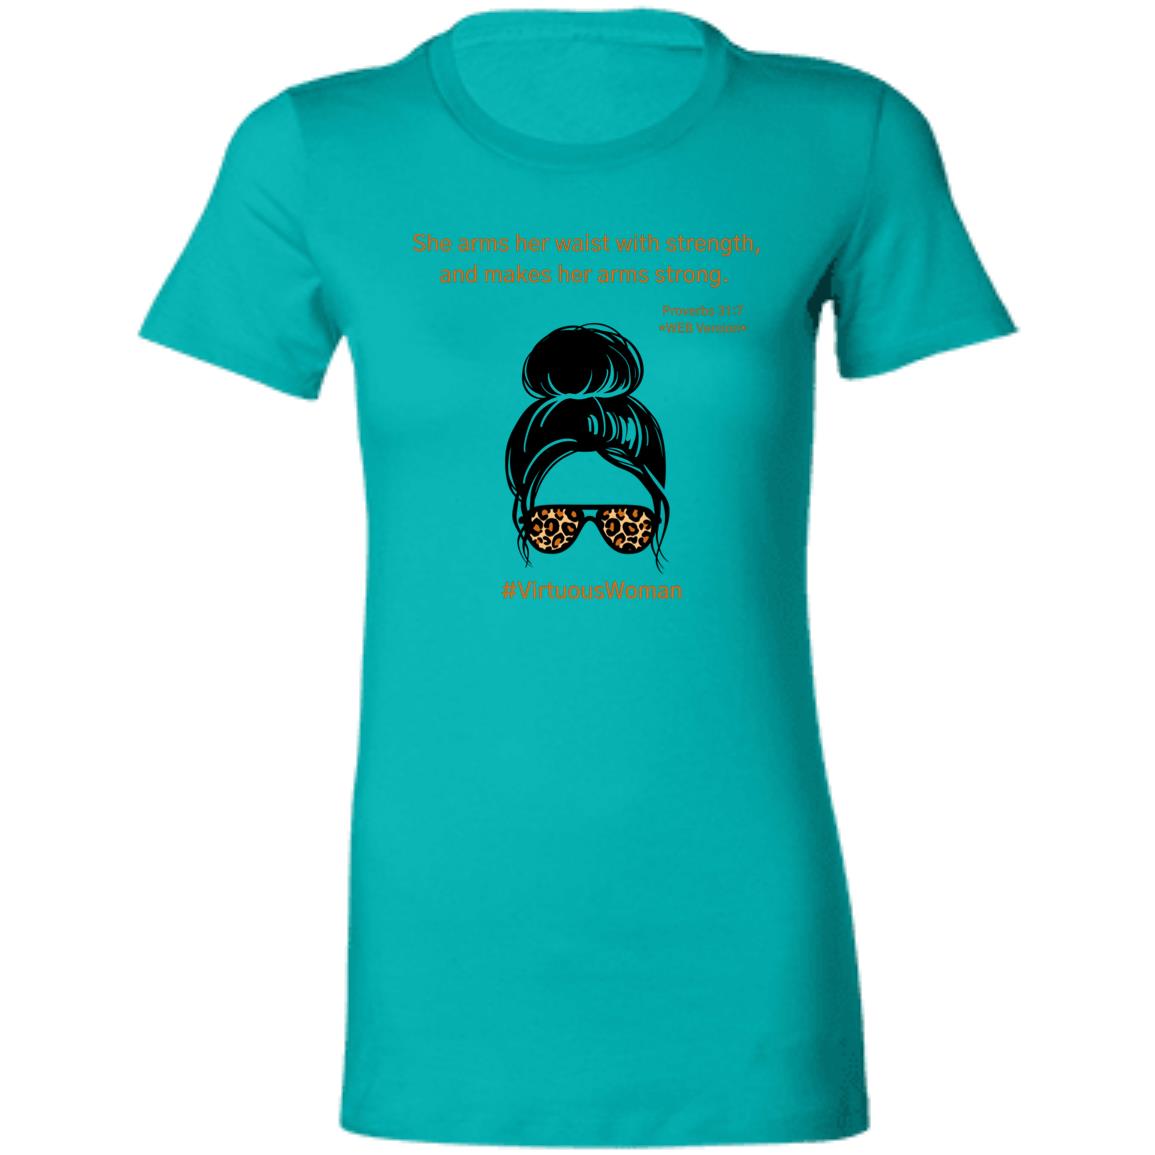 Virtuous Woman (Pr 31:7) T-Shirt - K.I. Collection